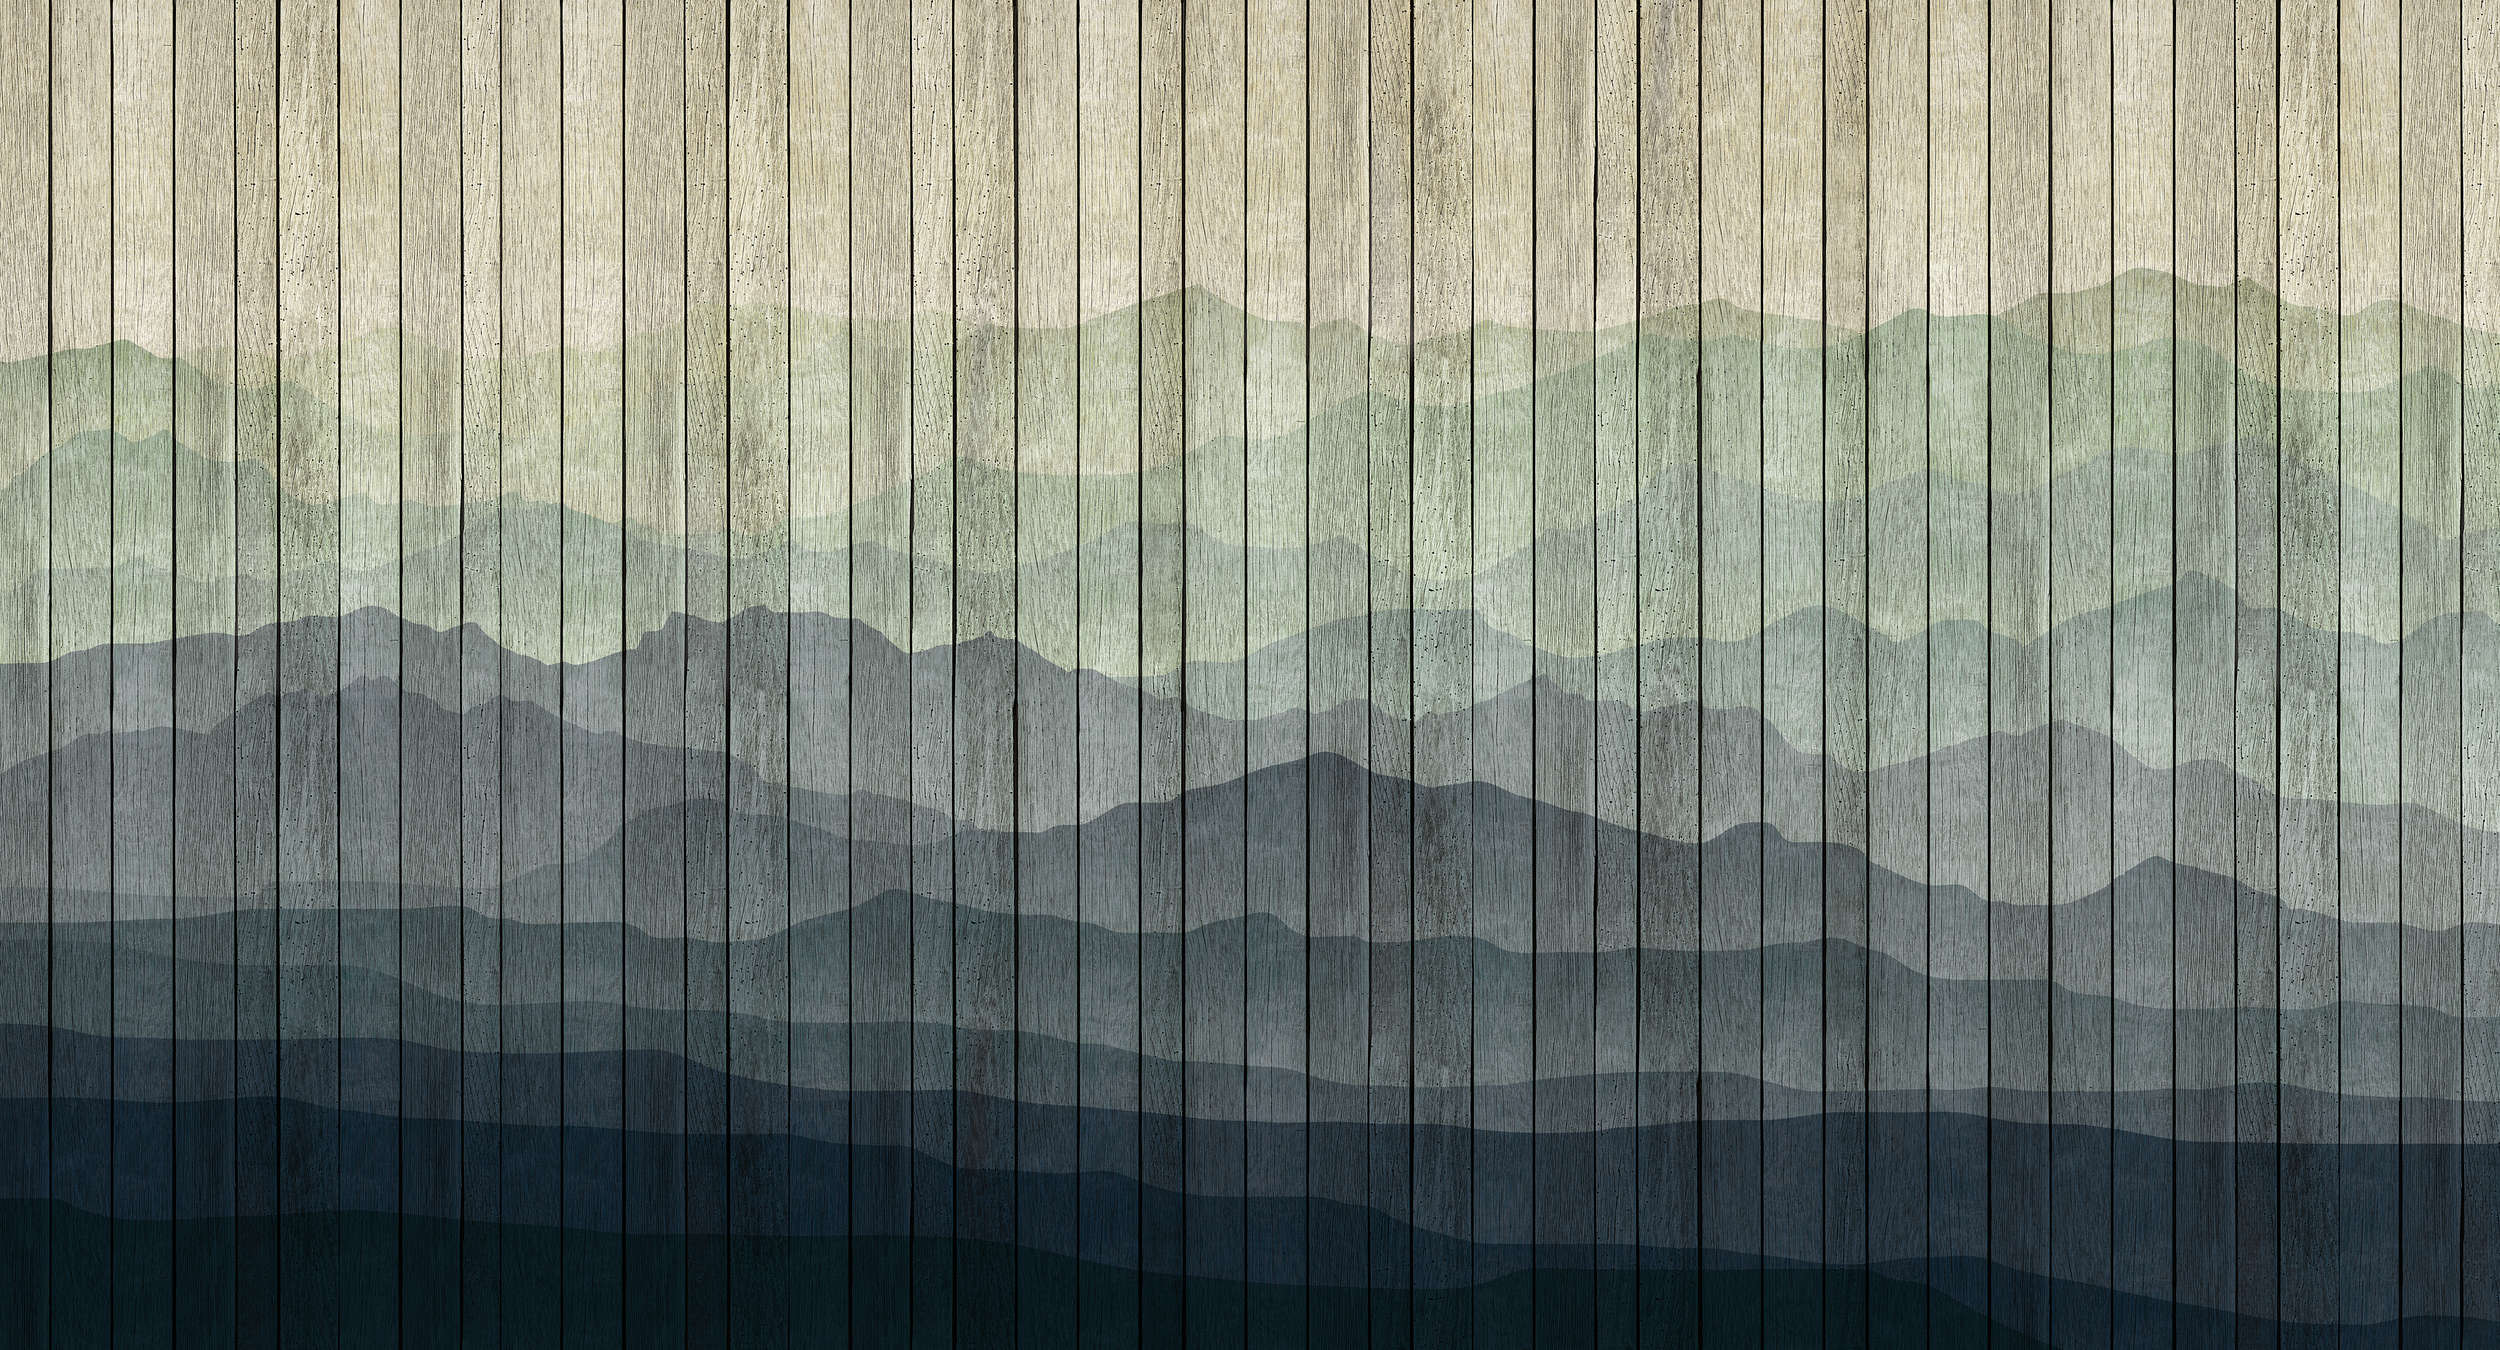             Mountains 1 - Papier peint moderne paysage de montagne & aspect planche - beige, bleu | structure intissé
        